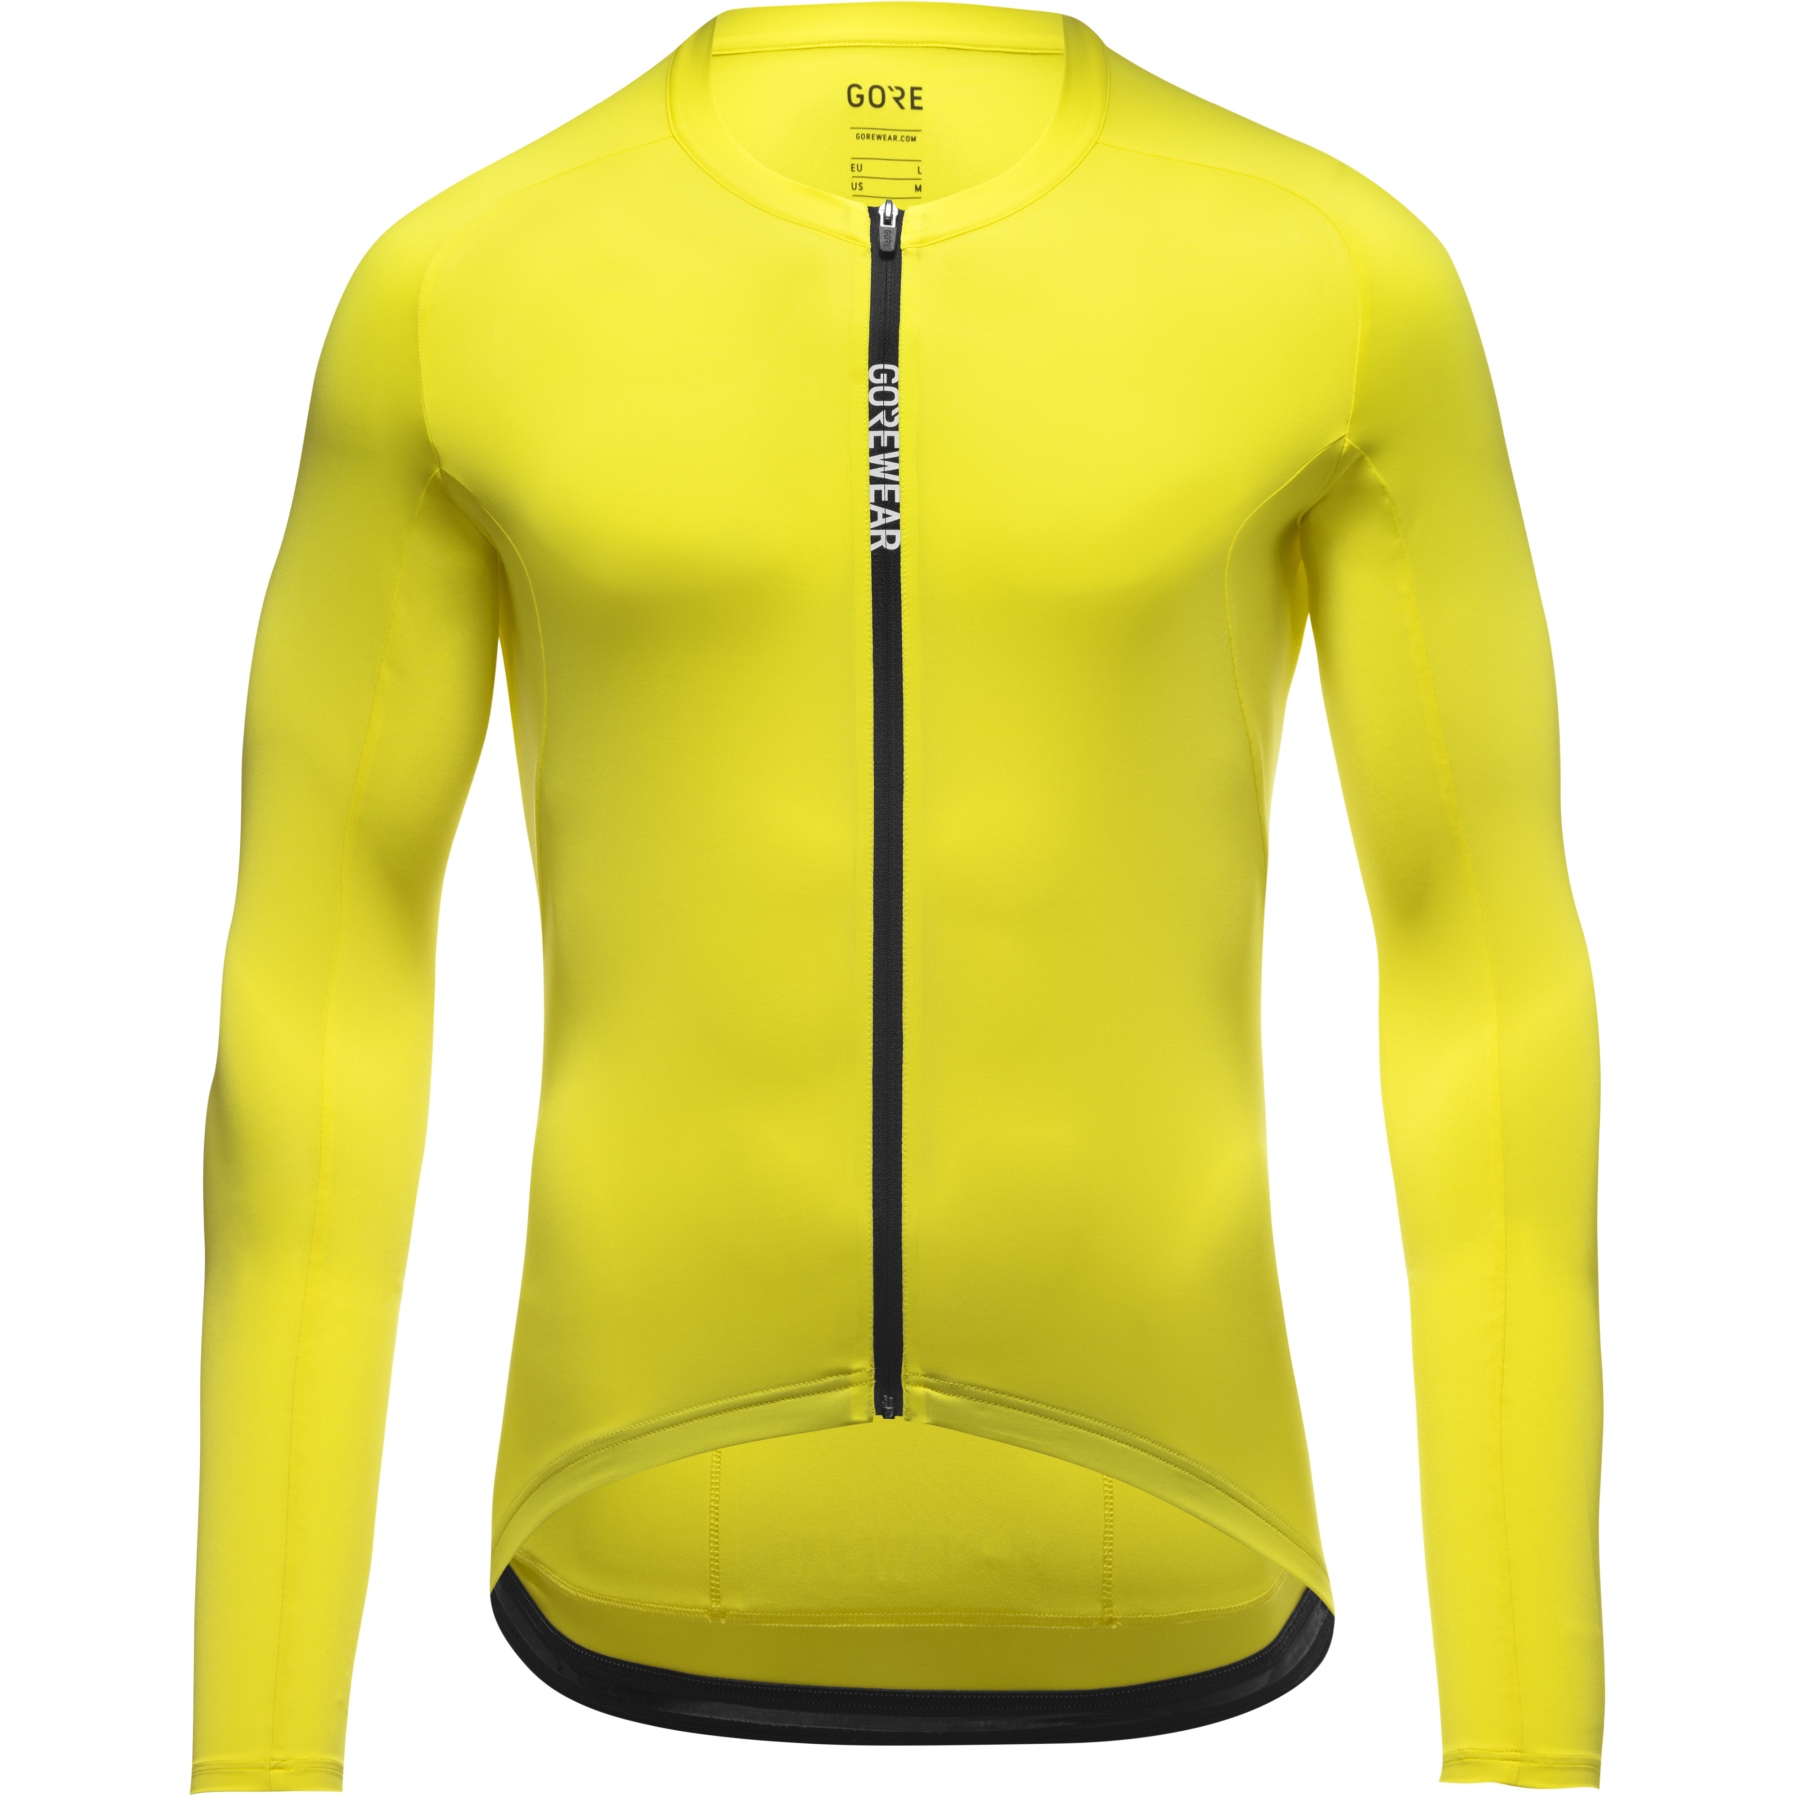 Produktbild von GOREWEAR Spinshift Langarm-Trikot Herren - washed neon yellow BP00